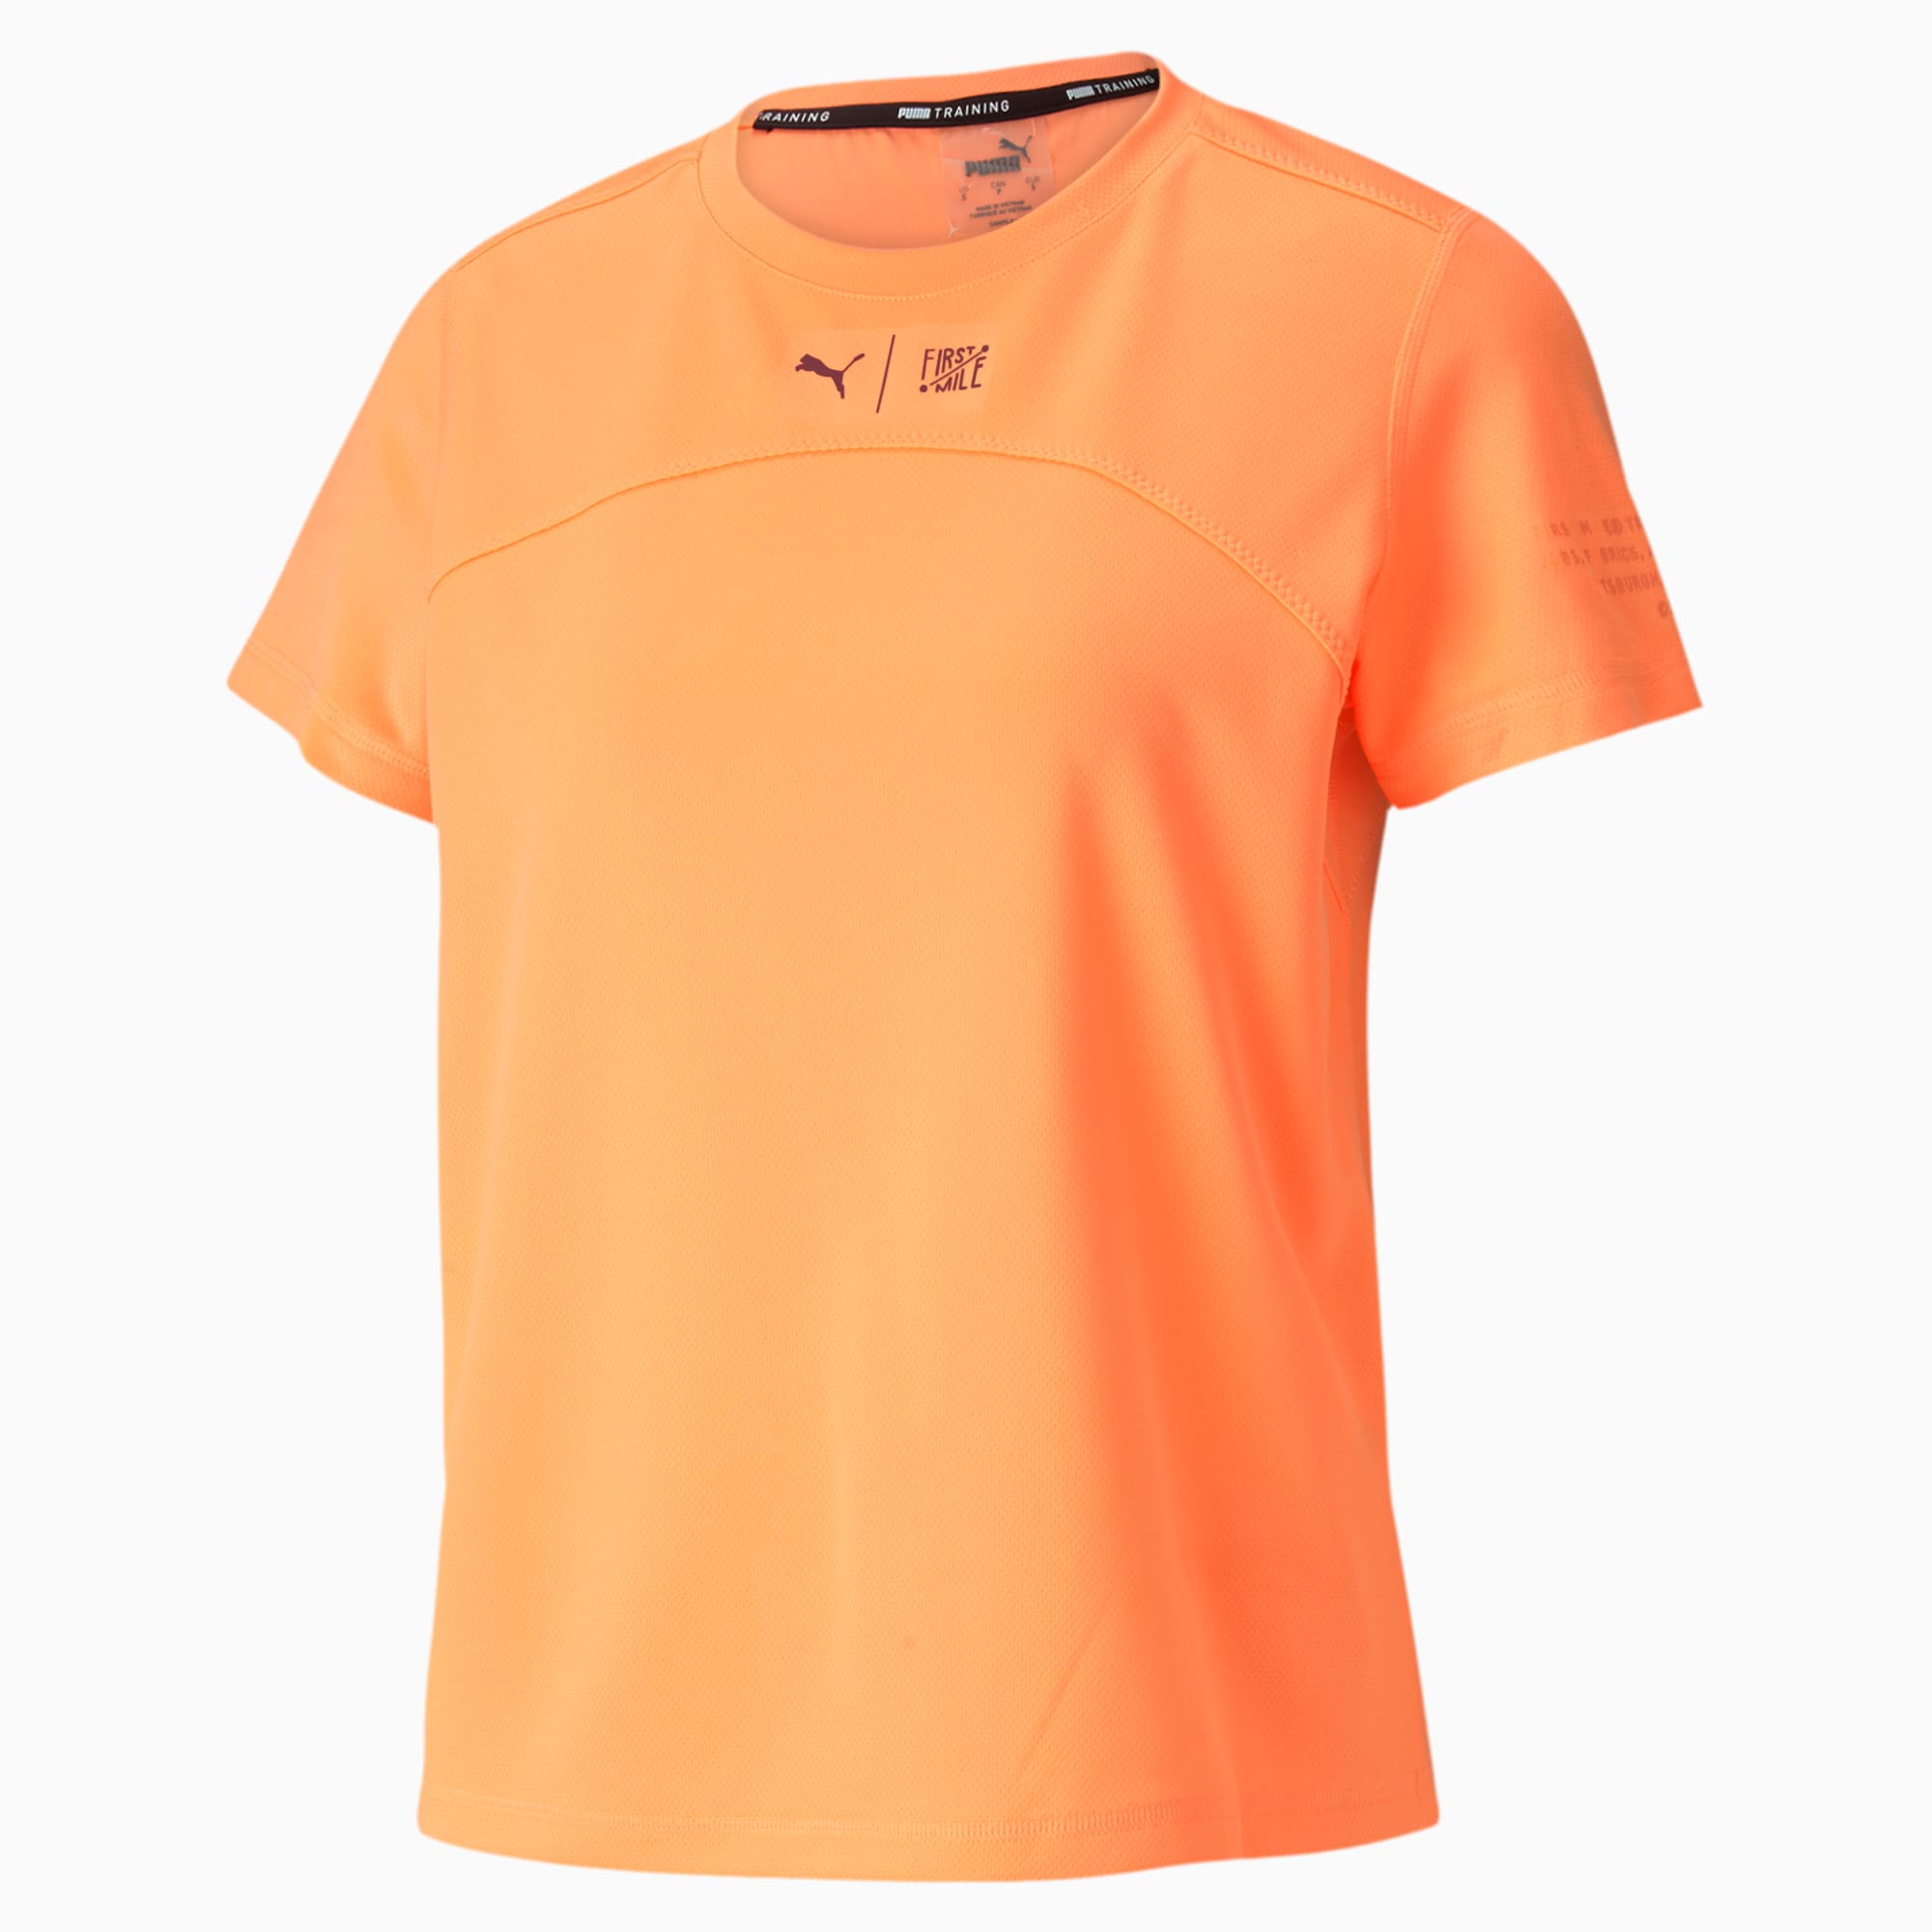 puma shirt orange